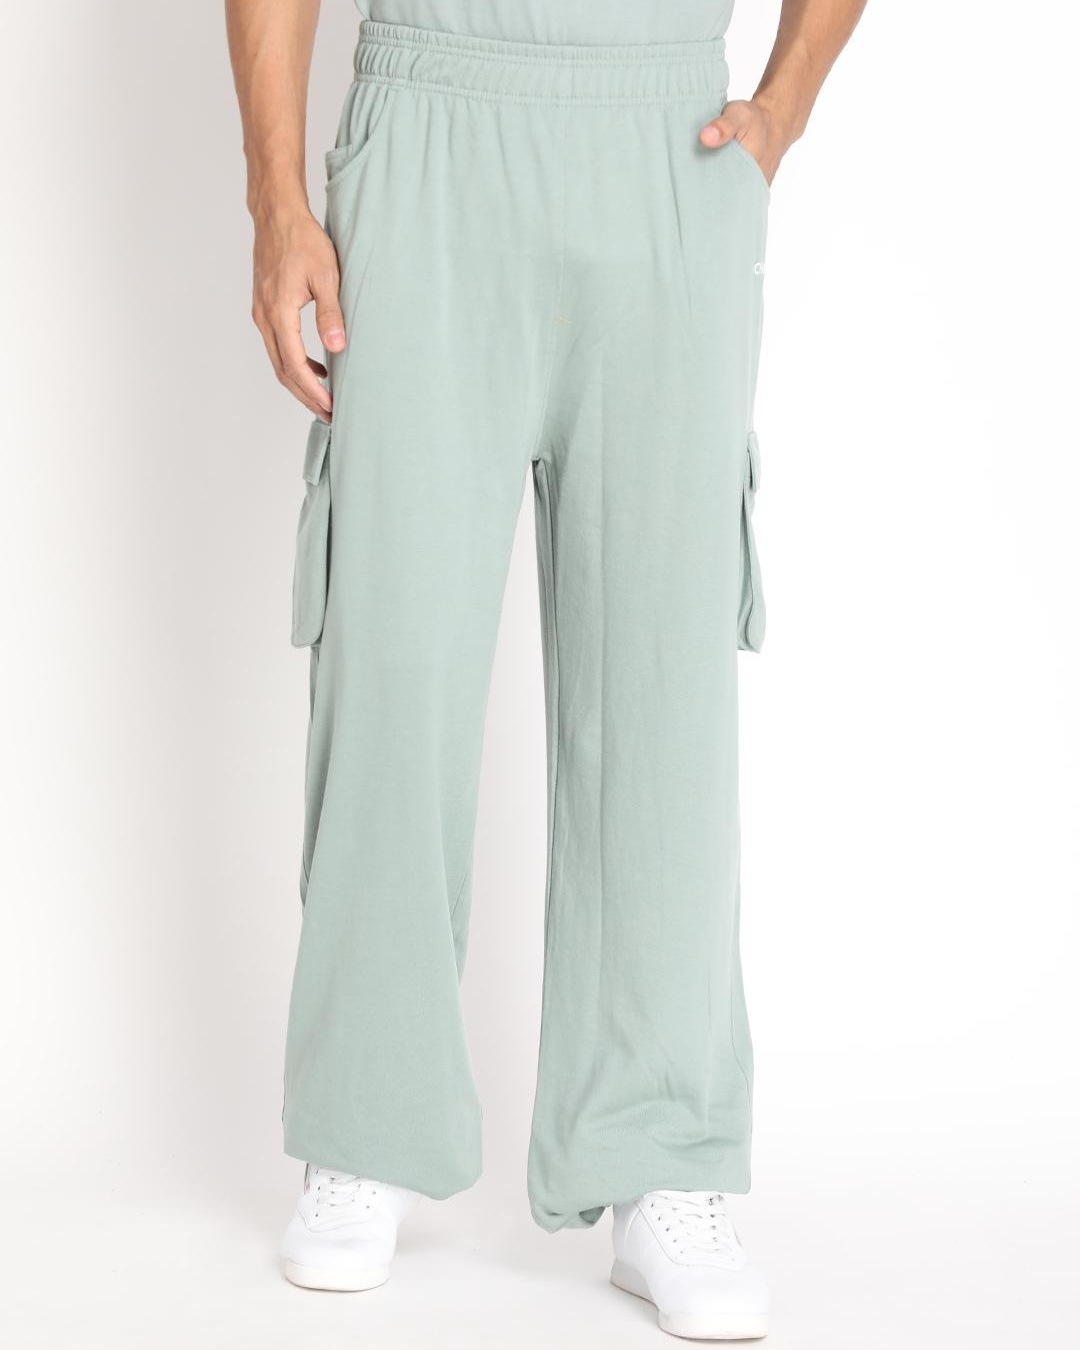 Buy Men's Pastel Green Cargo Track Pants for Men Green Online at Bewakoof